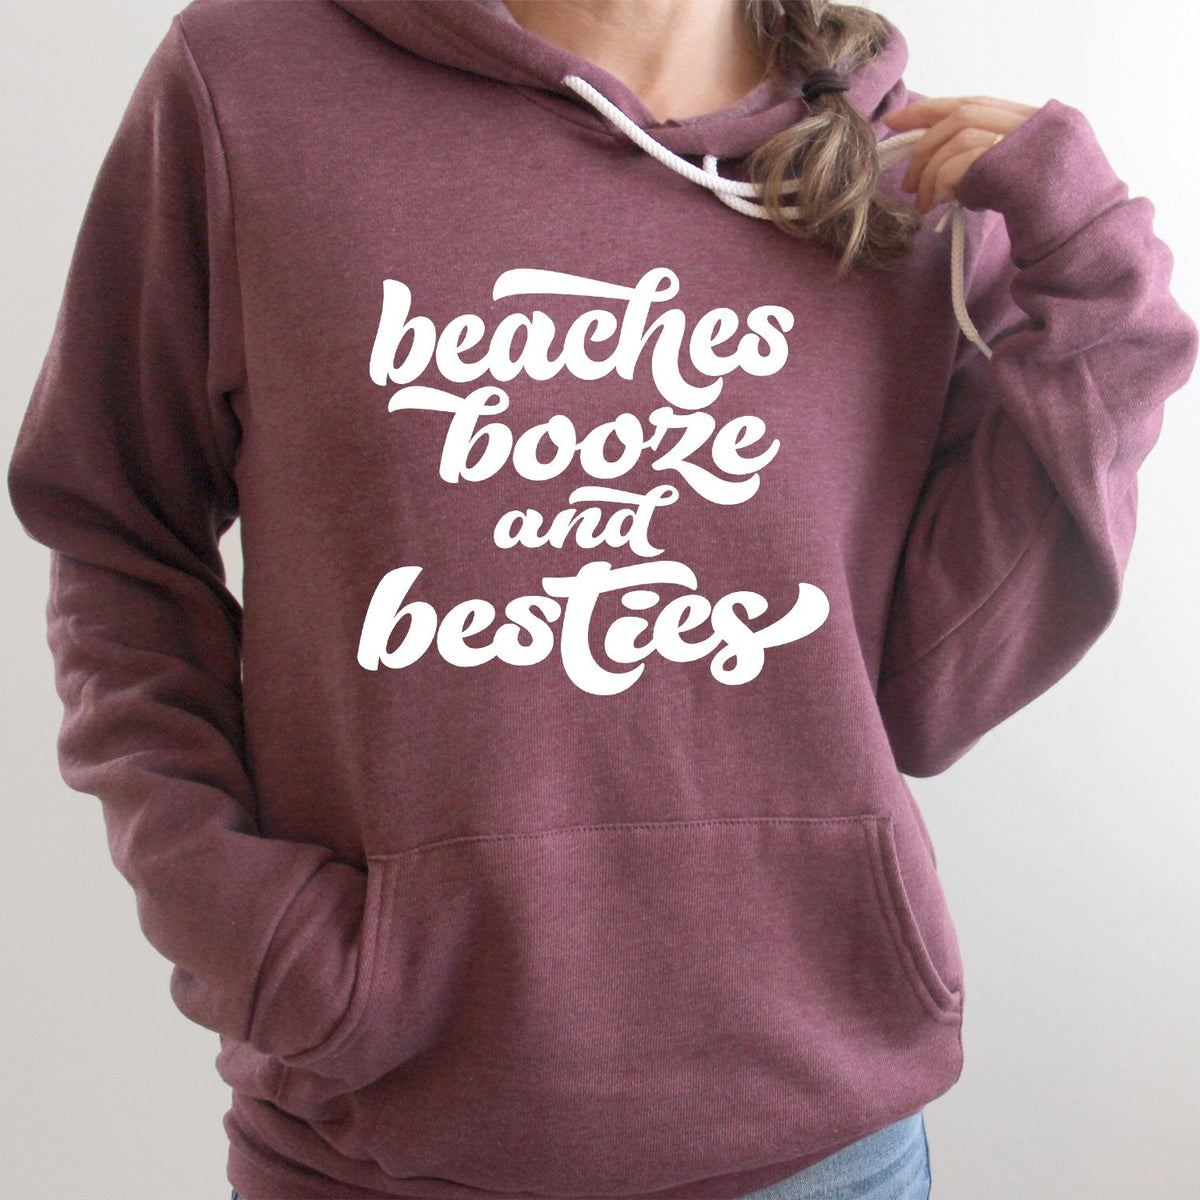 Beaches Booze and Besties - Hoodie Sweatshirt